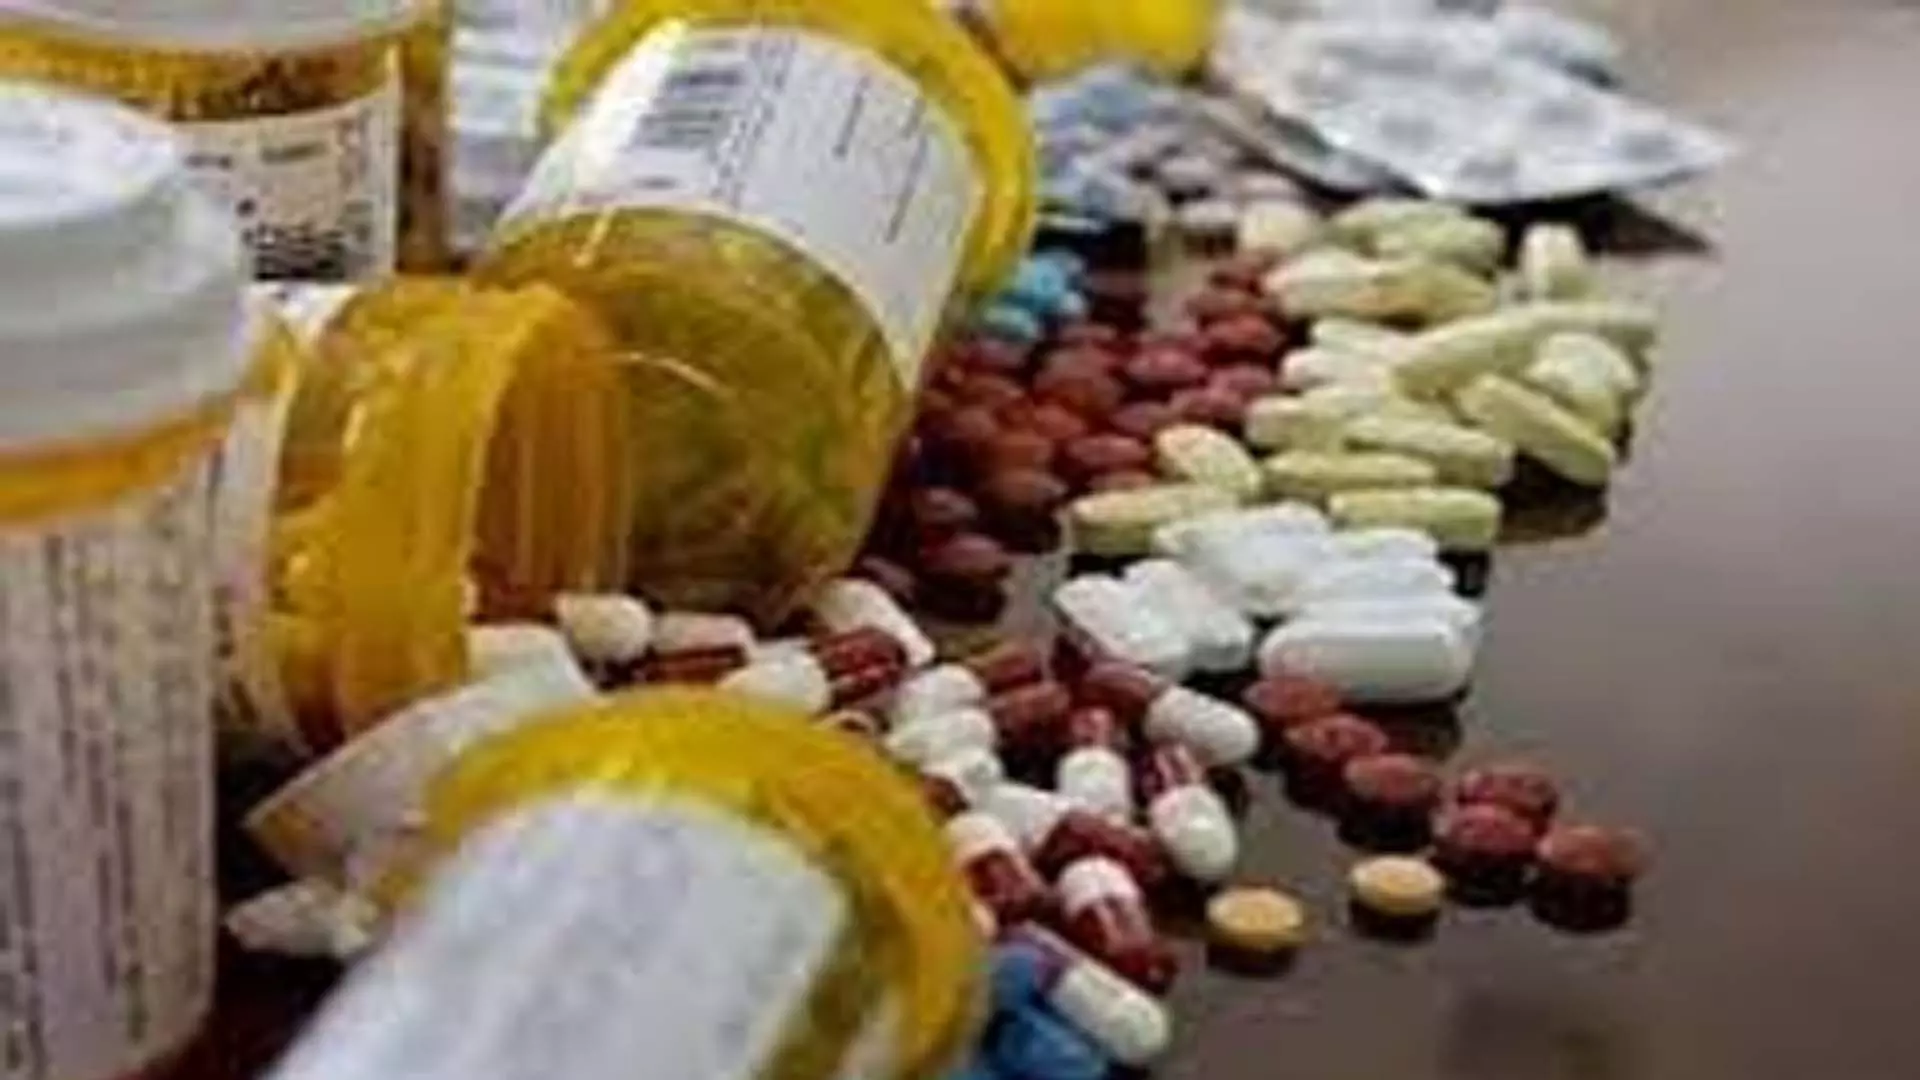 Mumbai News: 40 लाख रुपये की नशीली दवाओं के साथ 2 गिरफ्तार